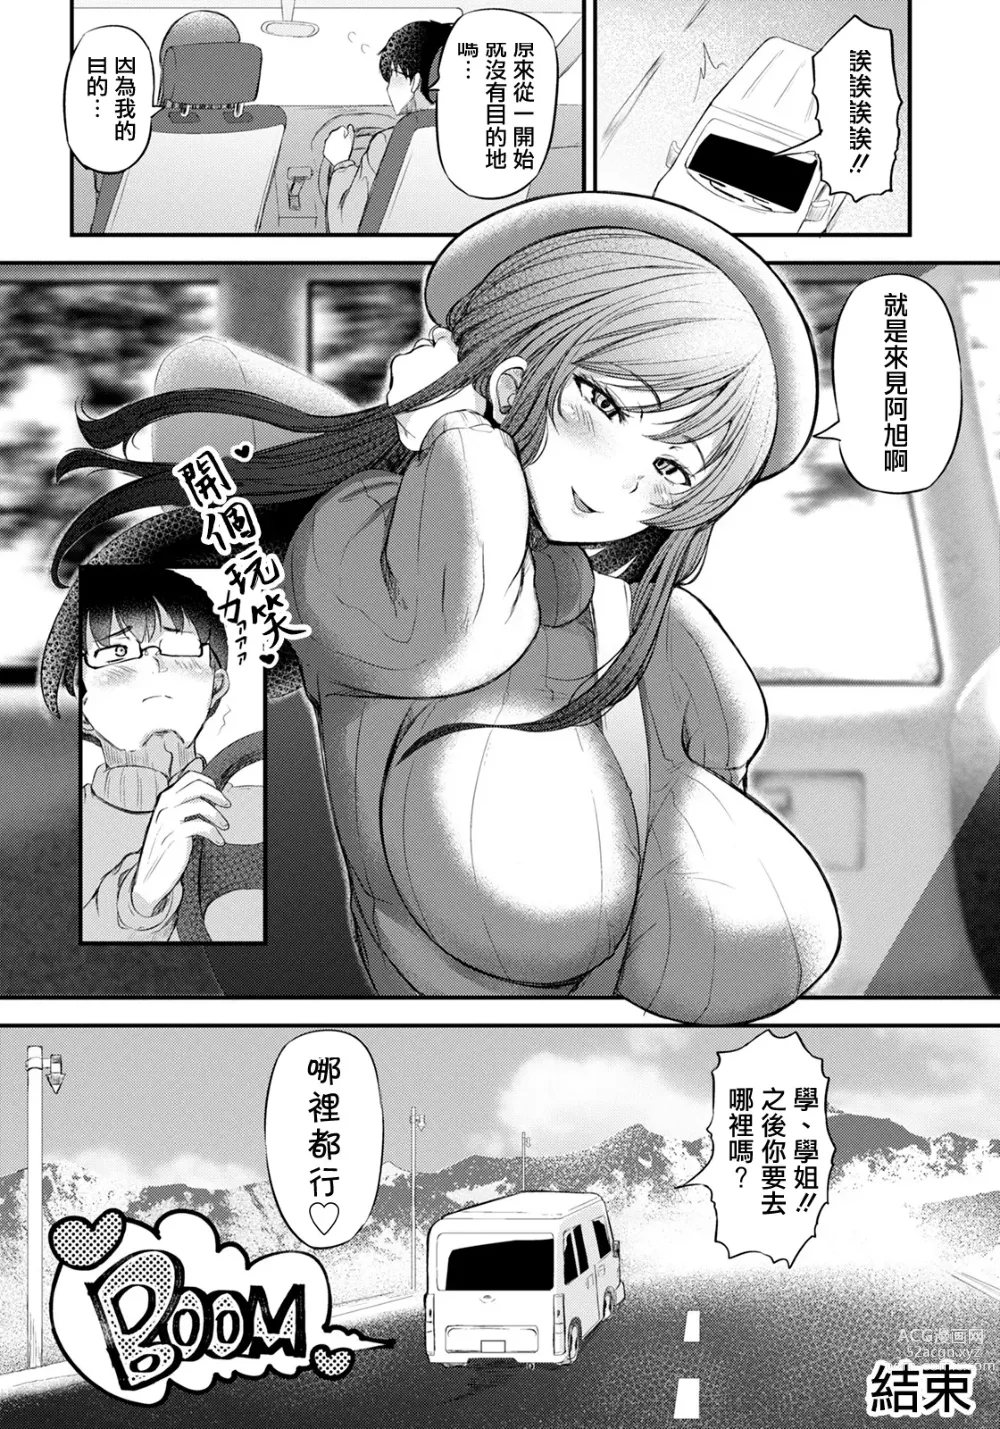 Page 20 of manga Shachu Haku